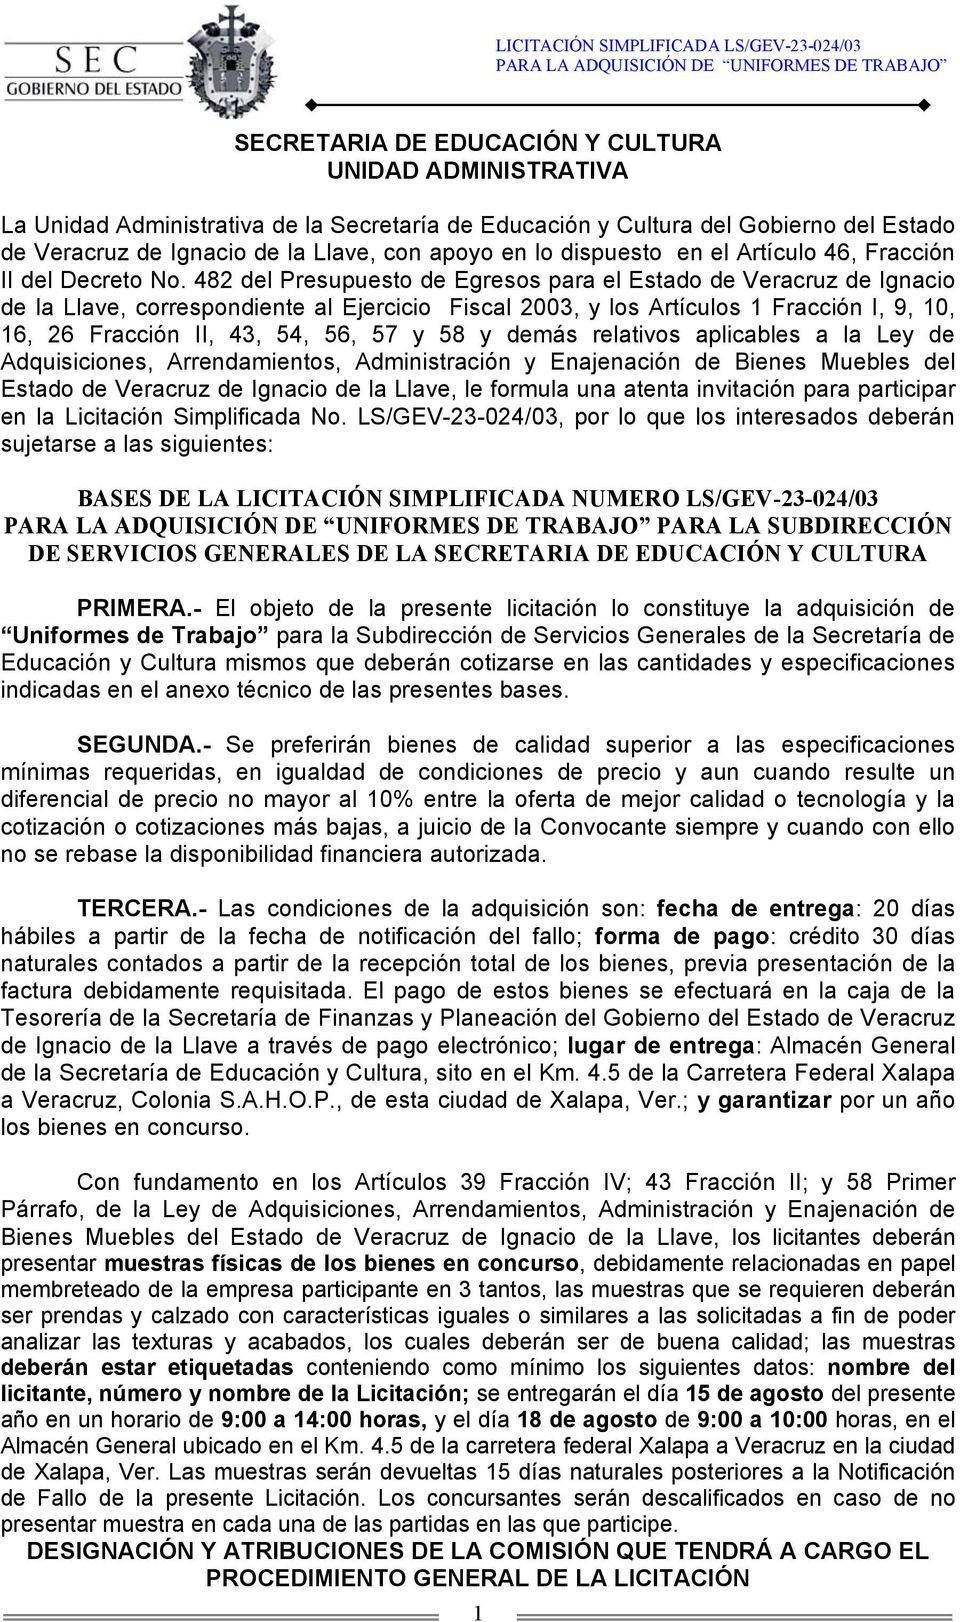 482 del Presupuesto de Egresos para el Estado de Veracruz de Ignacio de la Llave, correspondiente al Ejercicio Fiscal 2003, y los Artículos 1 Fracción I, 9, 10, 16, 26 Fracción II, 43, 54, 56, 57 y